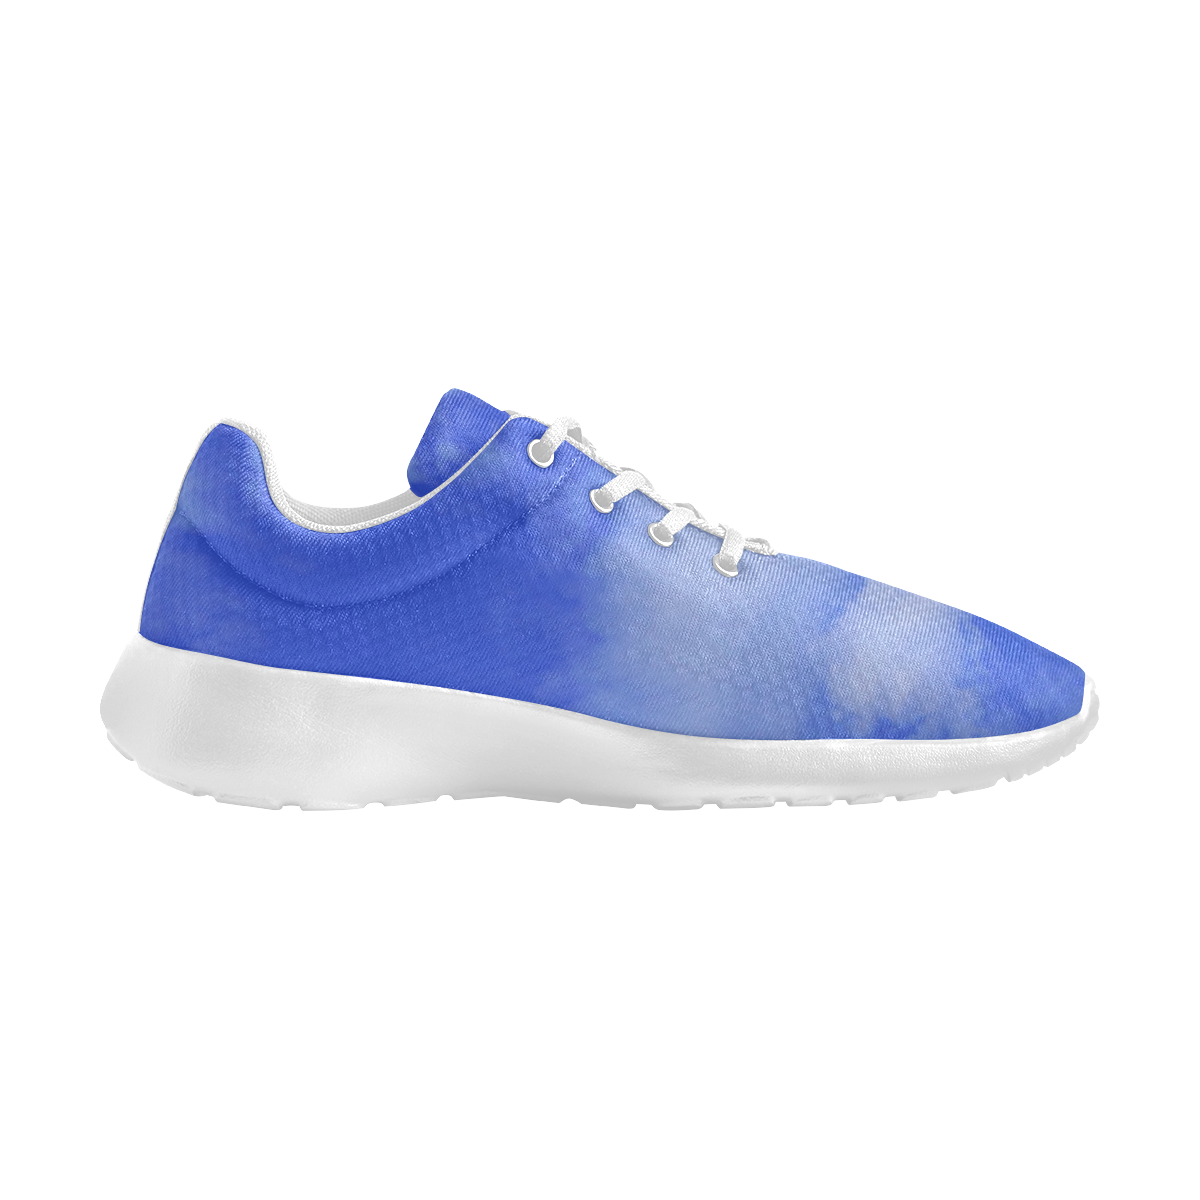 Blue Clouds Men's Athletic Shoes (Model 0200)